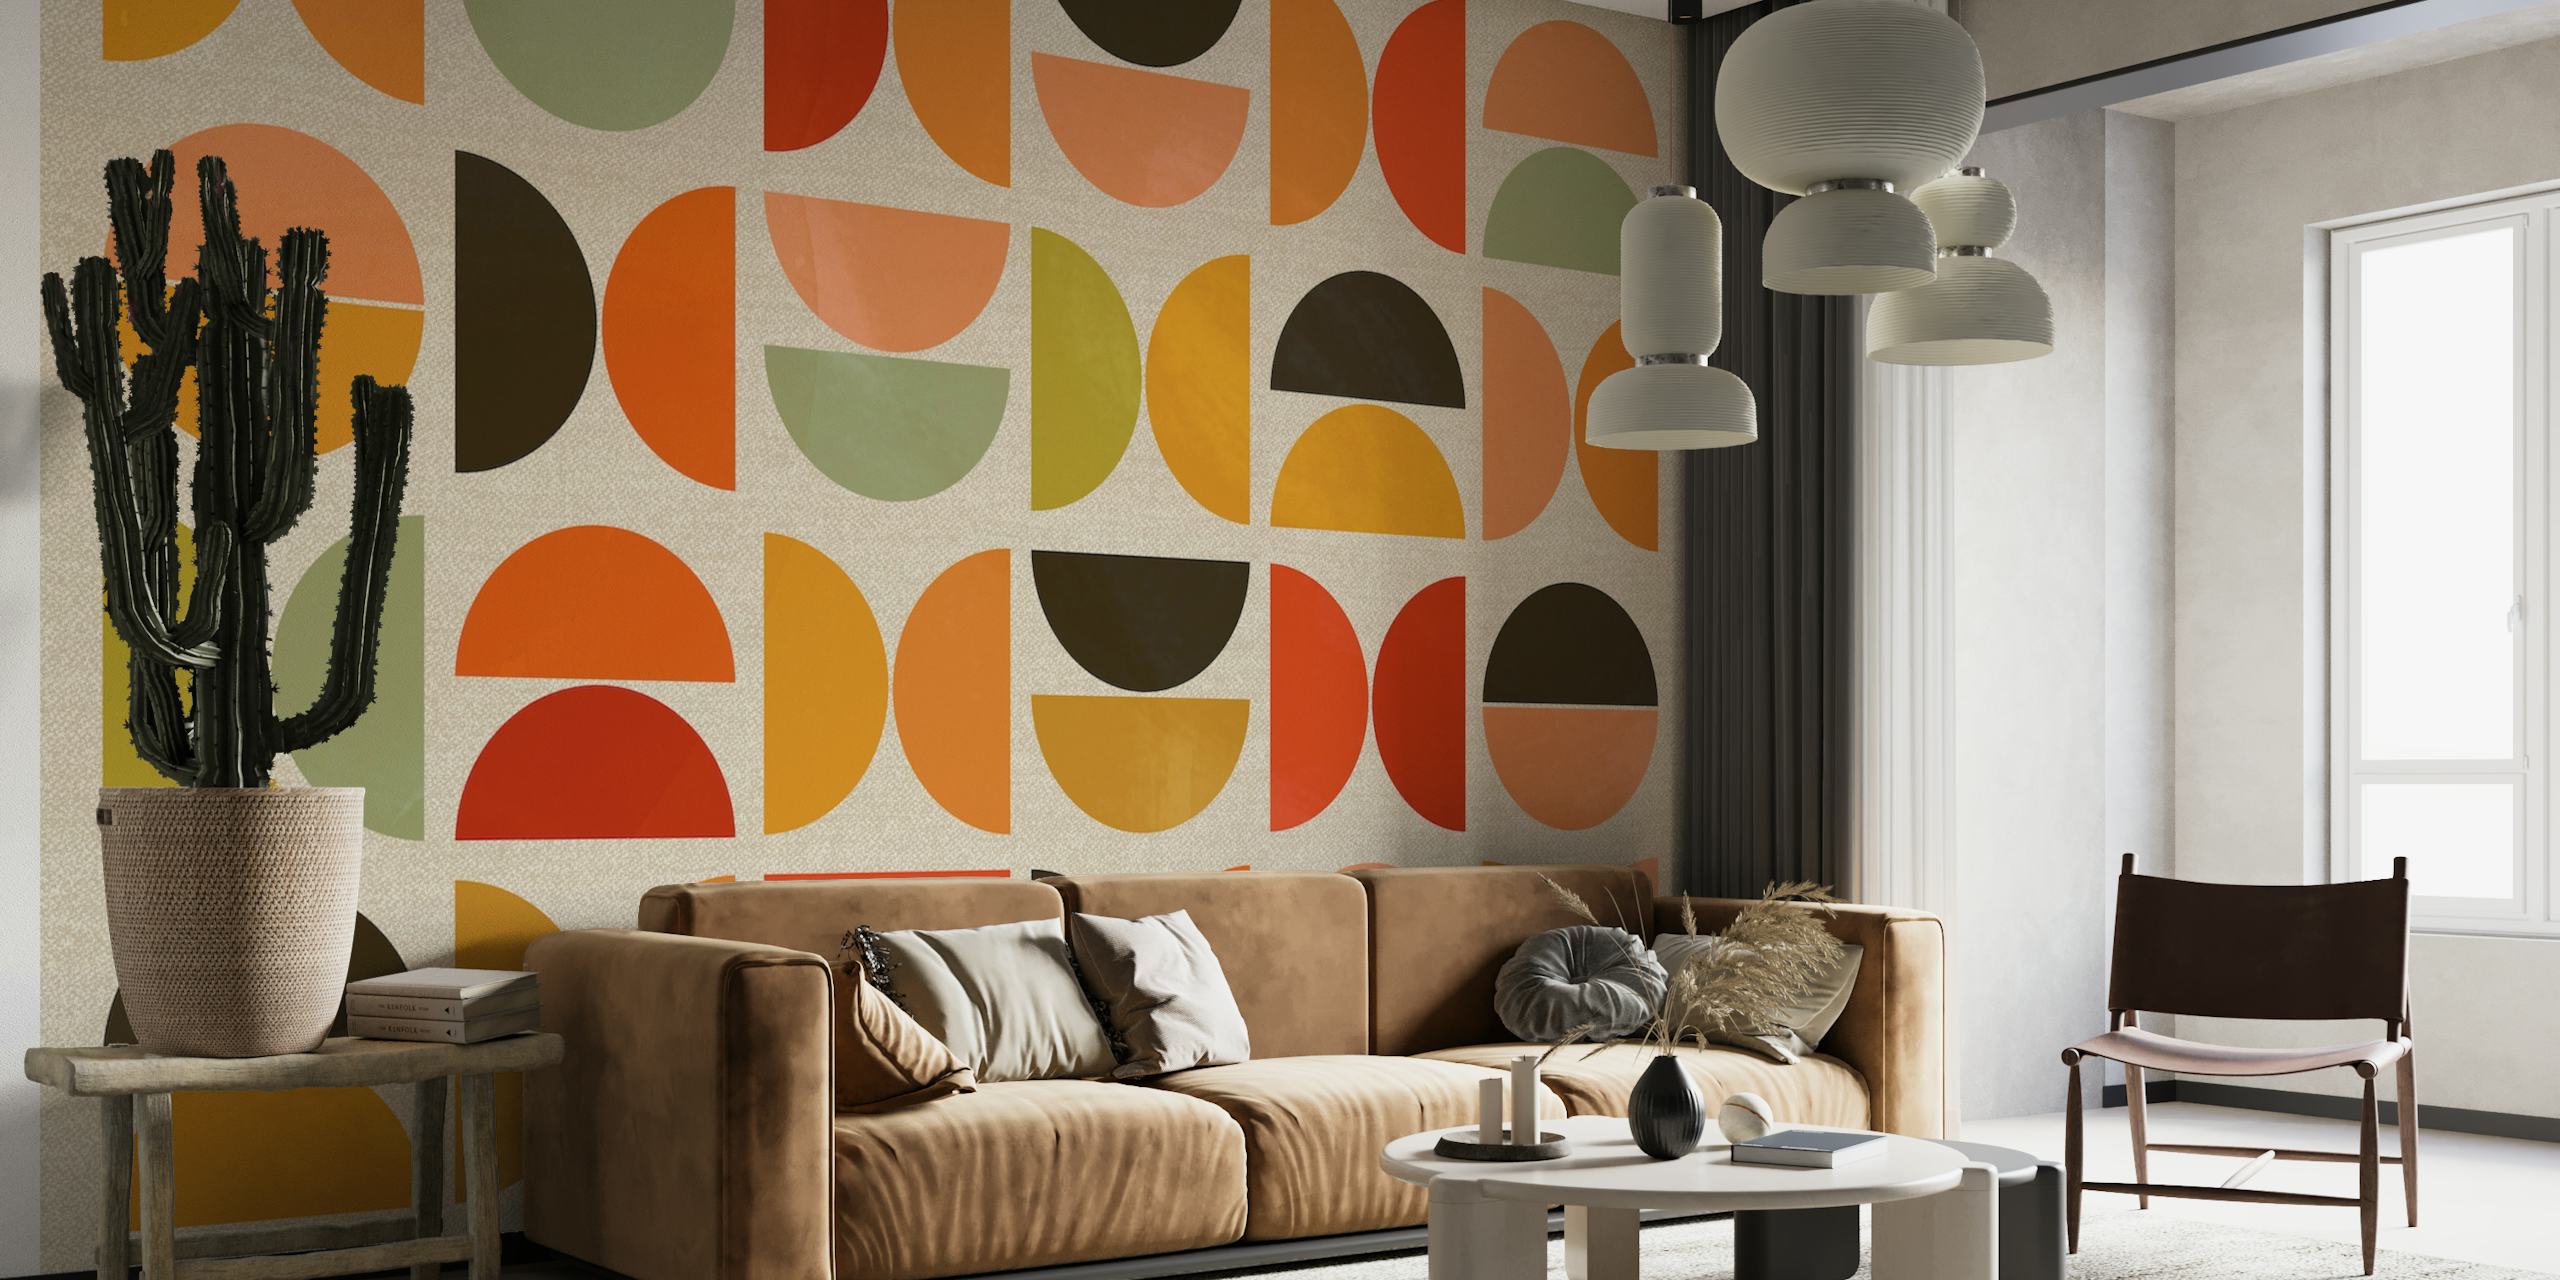 Apstraktni polukružni oblici i crtice u tonovima akvarela narančaste, zelene i smeđe na krem zidnom muralu